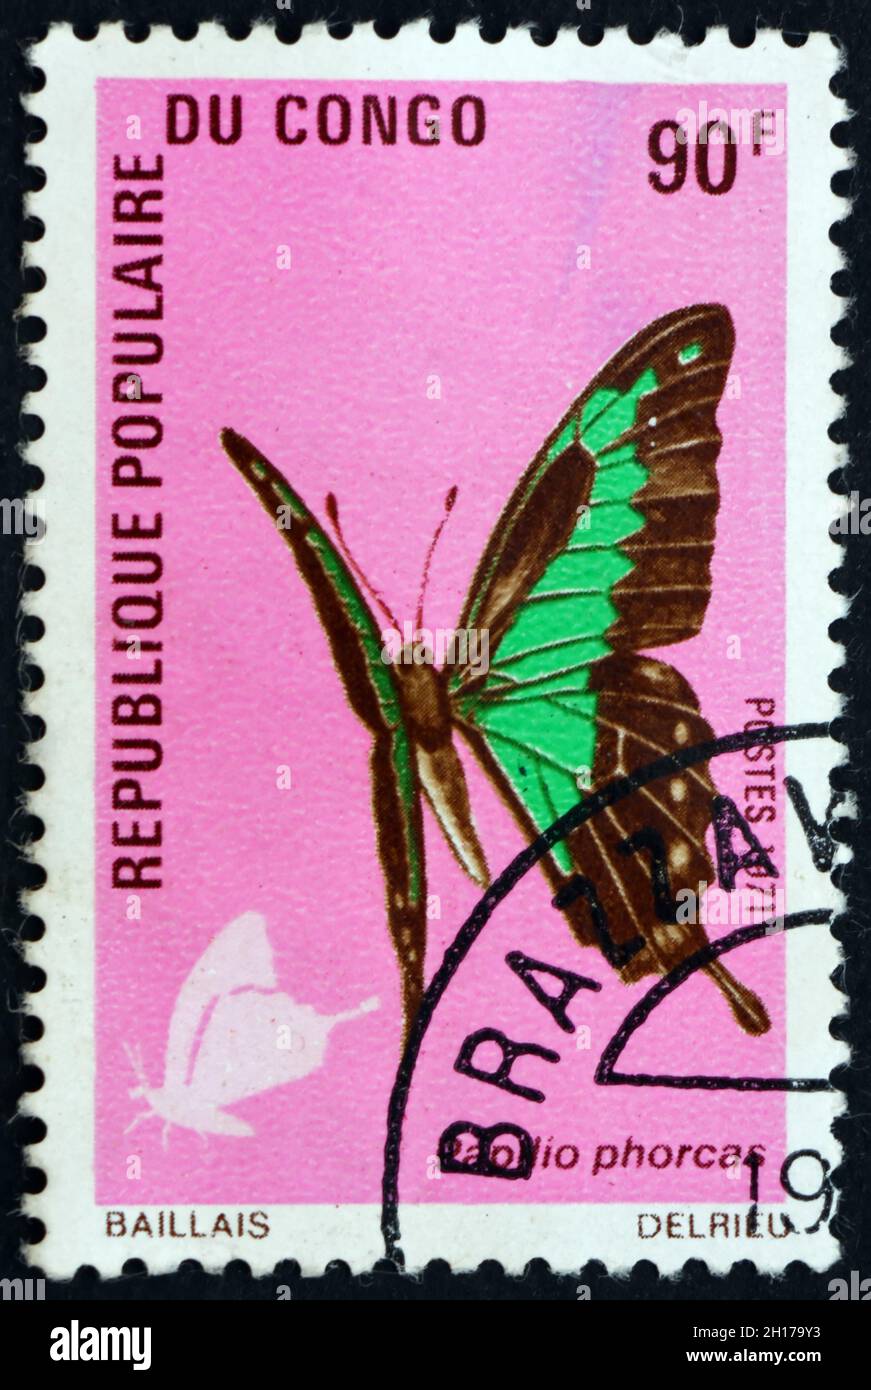 CONGO - CIRCA 1971: a stamp printed in Congo shows Apple-green swallowtail, papilio phorcas, butterfly, circa 1971 Stock Photo